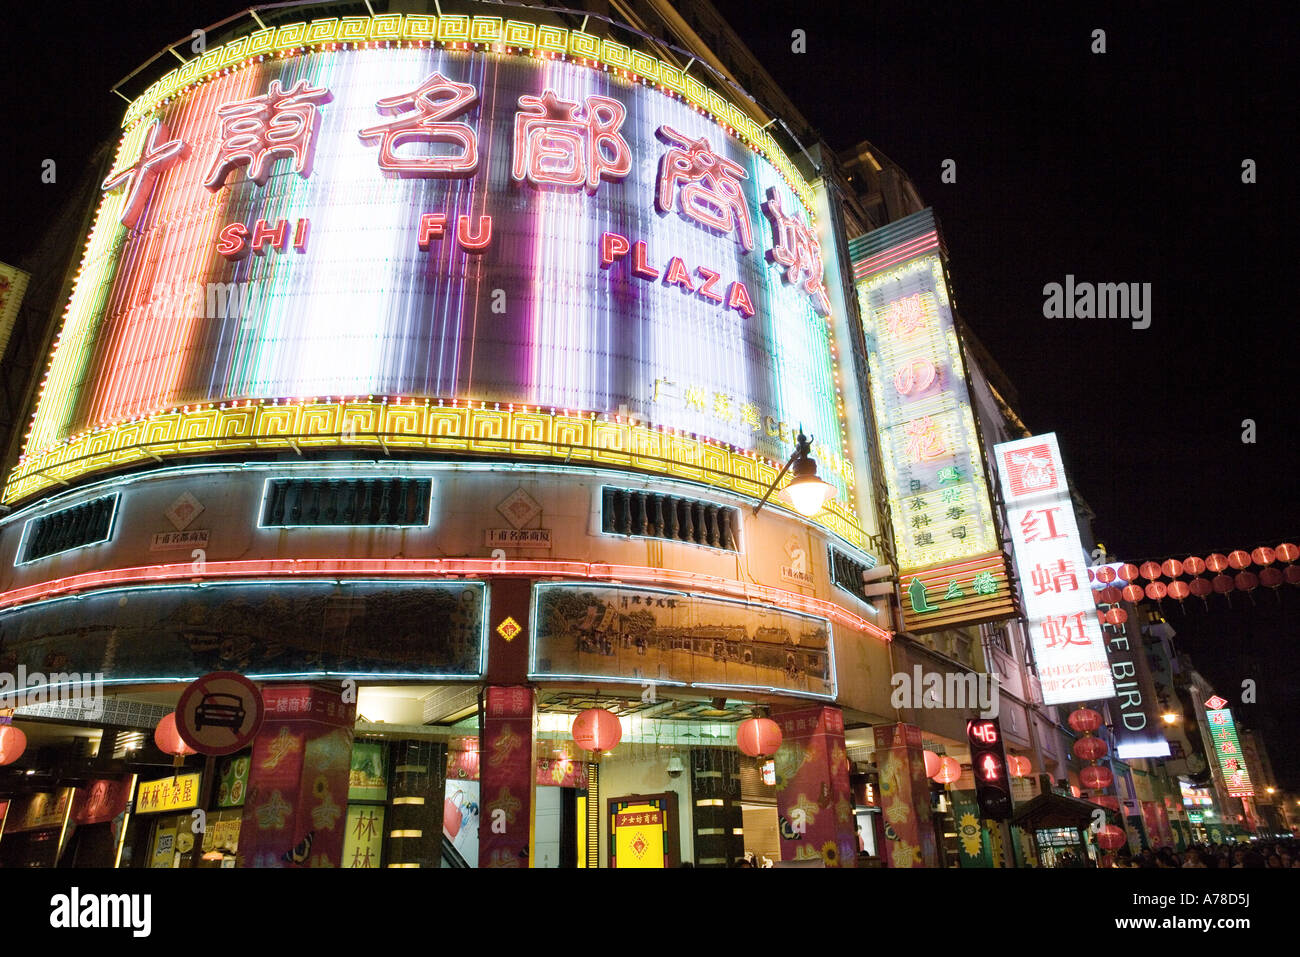 Guangzhou, Guangdong province, China, neon lights at night Stock Photo